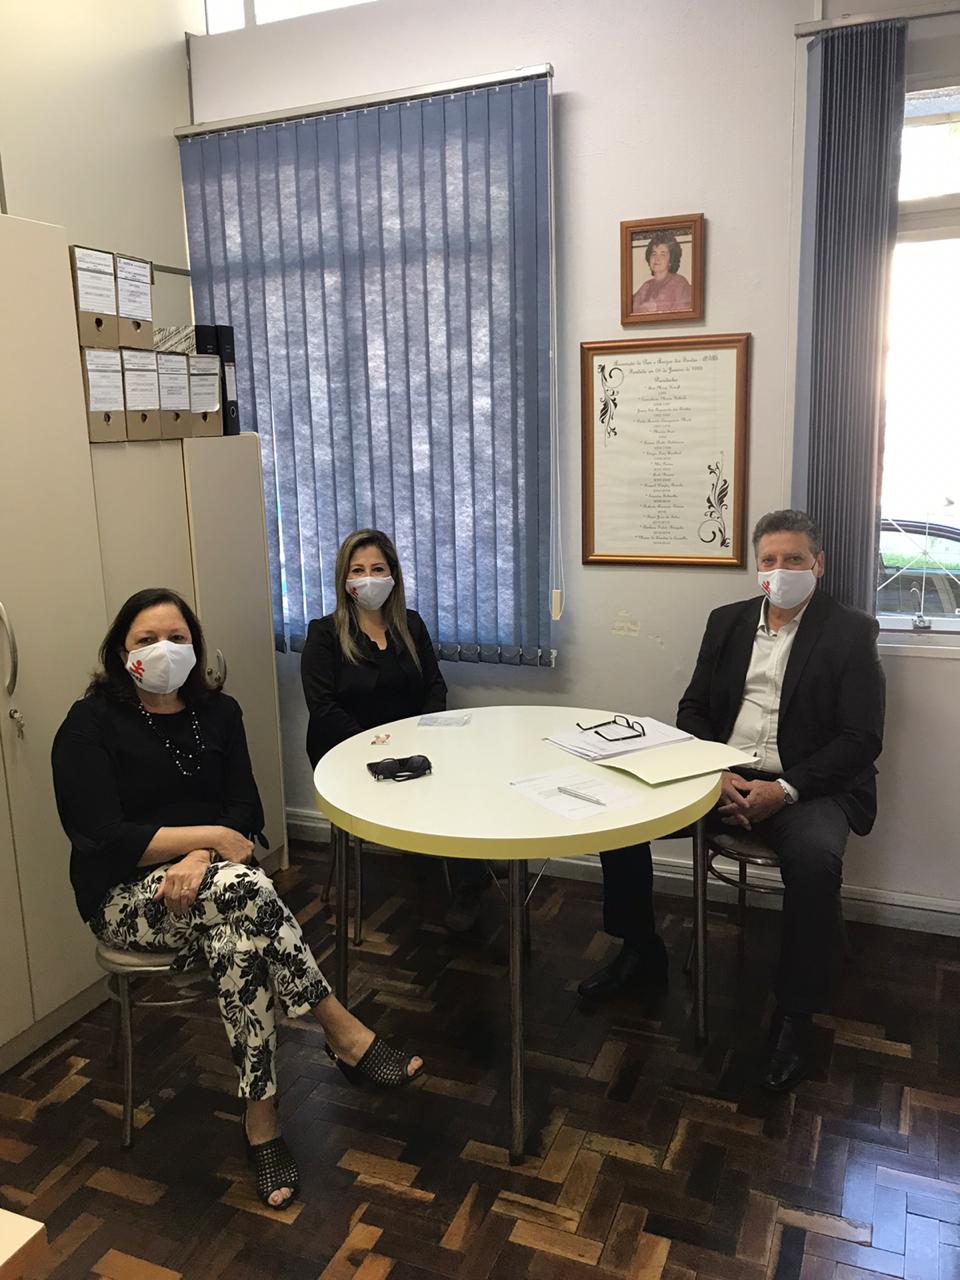 Três pessoas sentadas, ambiente interno, duas mulheres, um homem, todos de máscaras. 